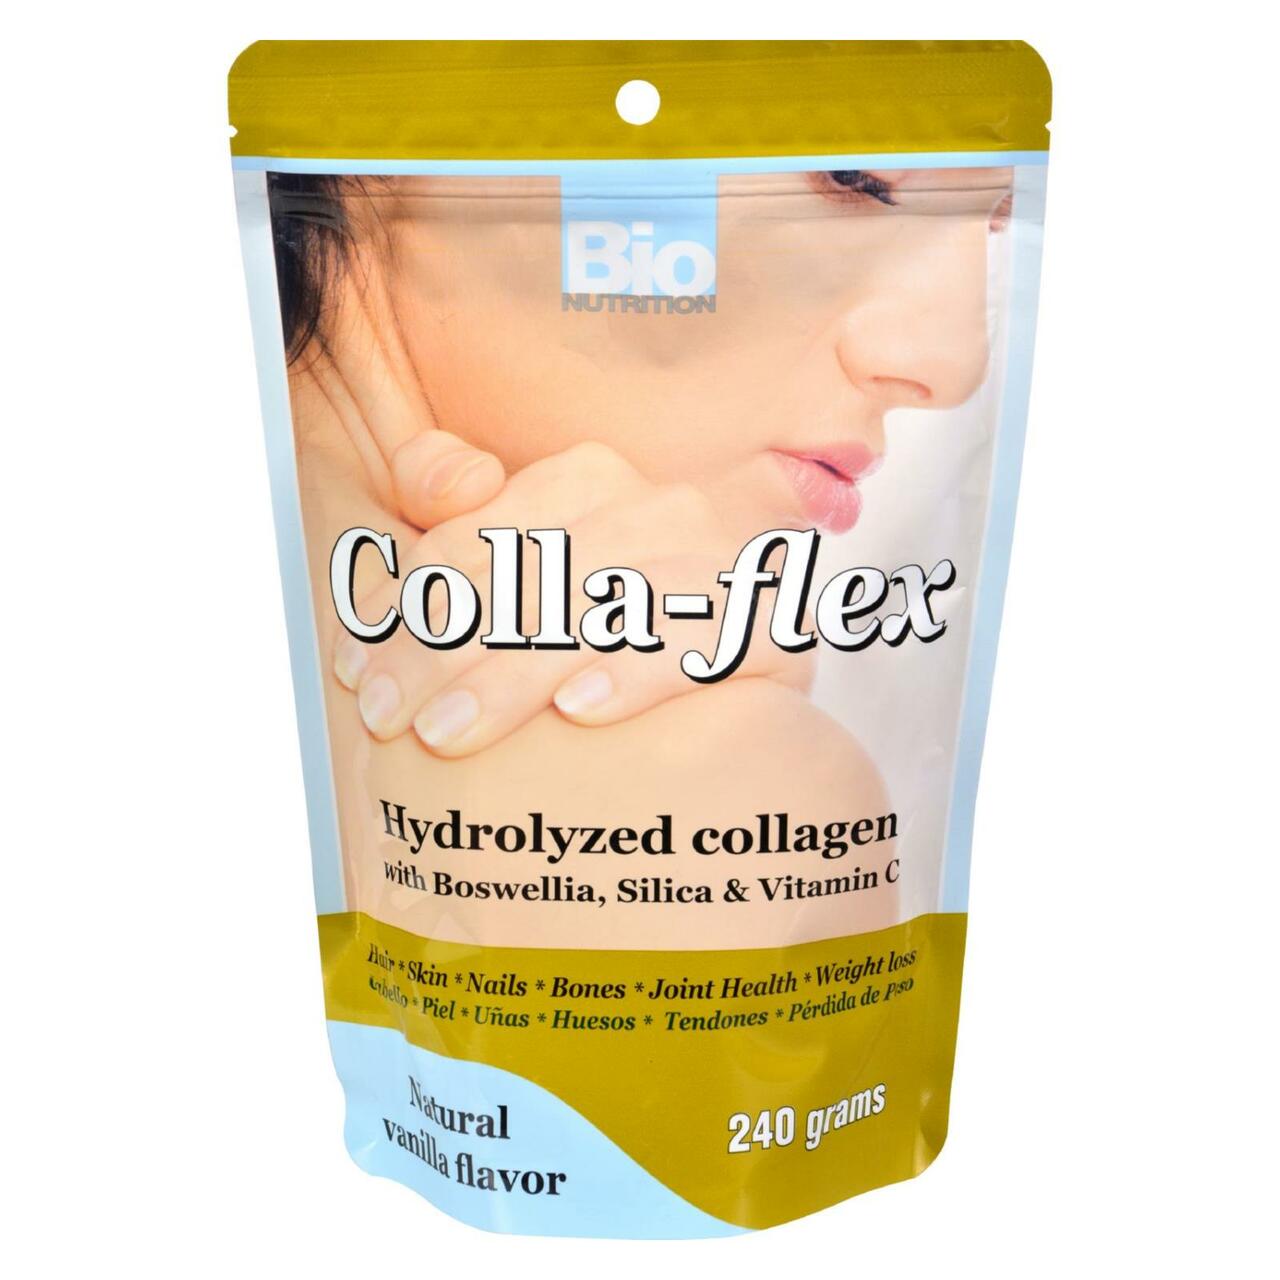 Colla-flex Hydrolyzed Collagen, 240g